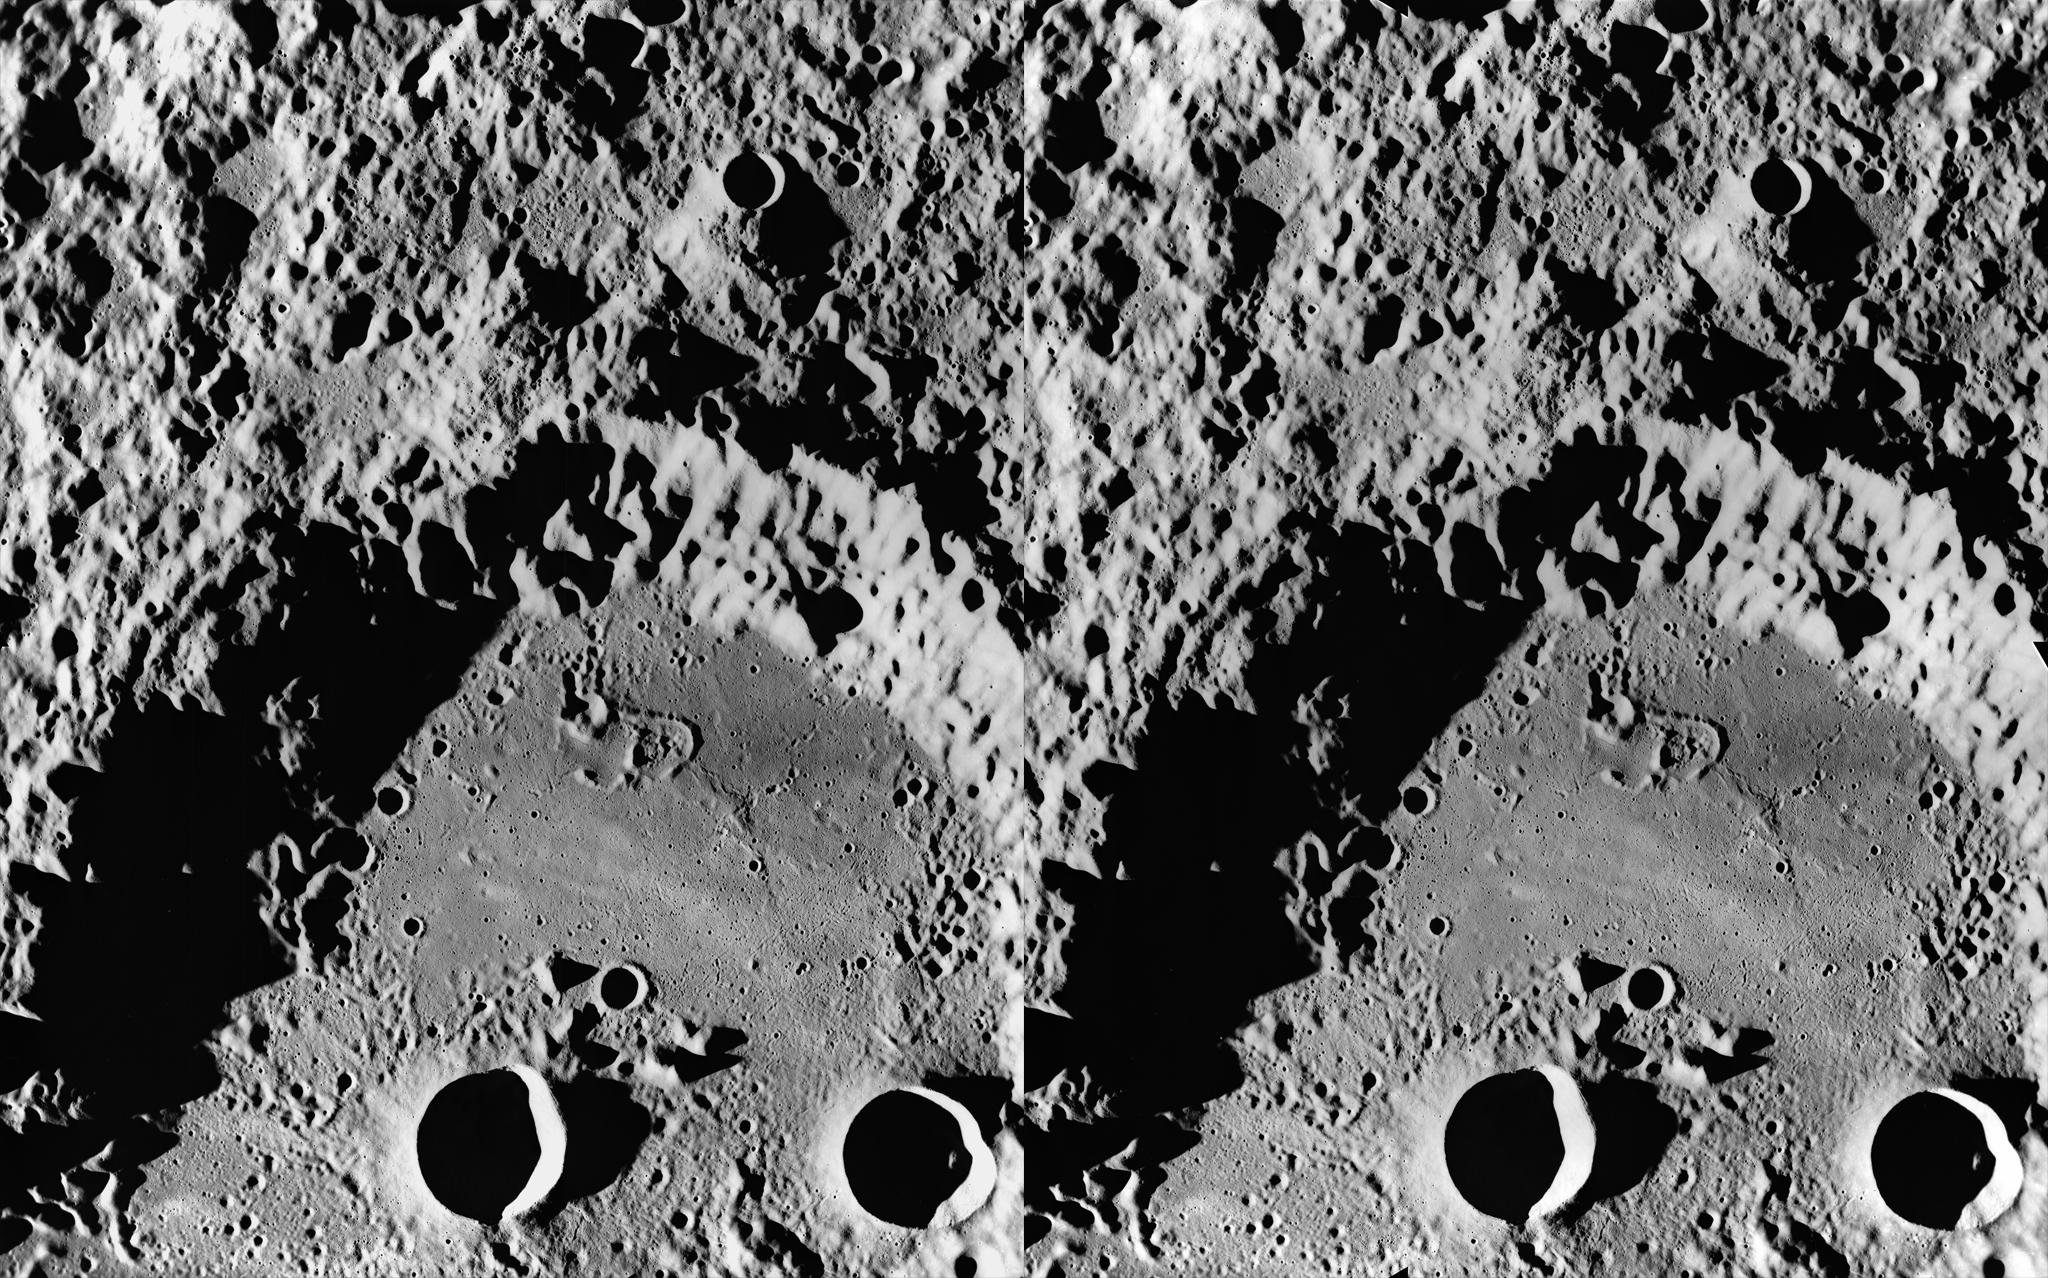 Изображение обратной стороны луны. Кратер Ван де Грааф на Луне. Снимки обратной стороны Луны высокого разрешения. Обратная сторона Луны. Спутник на обратной стороне Луны.